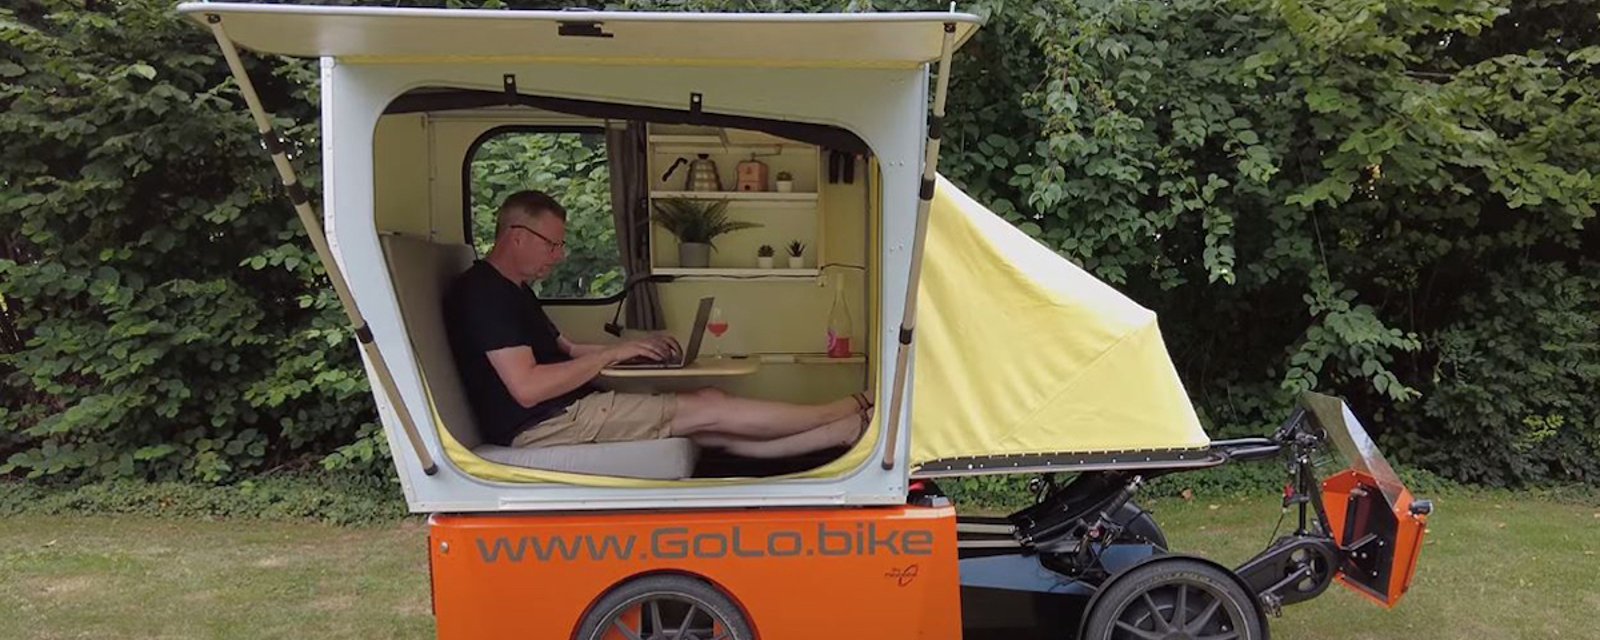 Une idée pour vos prochaines vacances estivales: un vélo camping-car électrique 